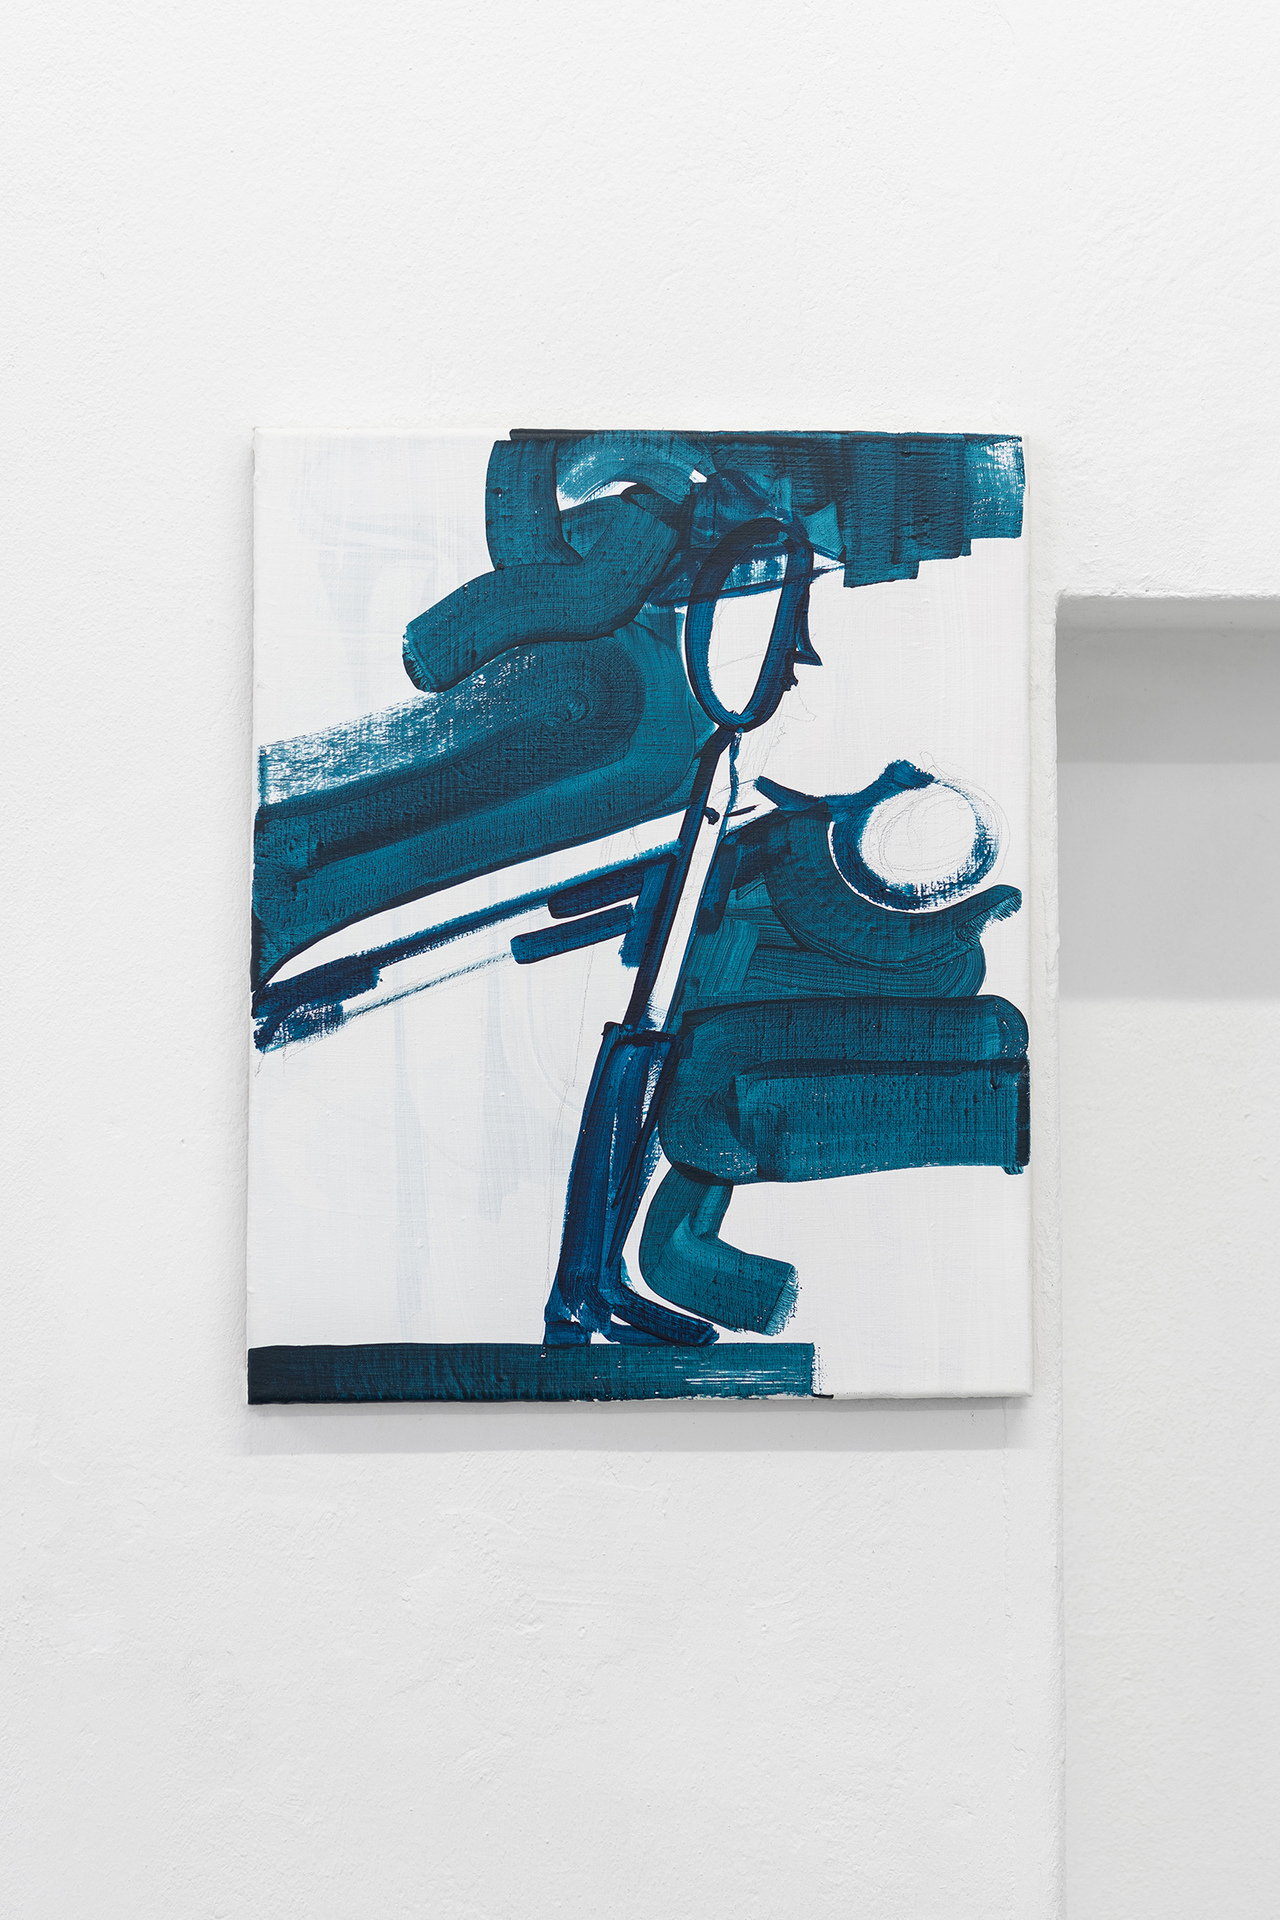 Ulrich Pester, „Schere“, Acrylic on Linen, 50 x 40 cm, 2020